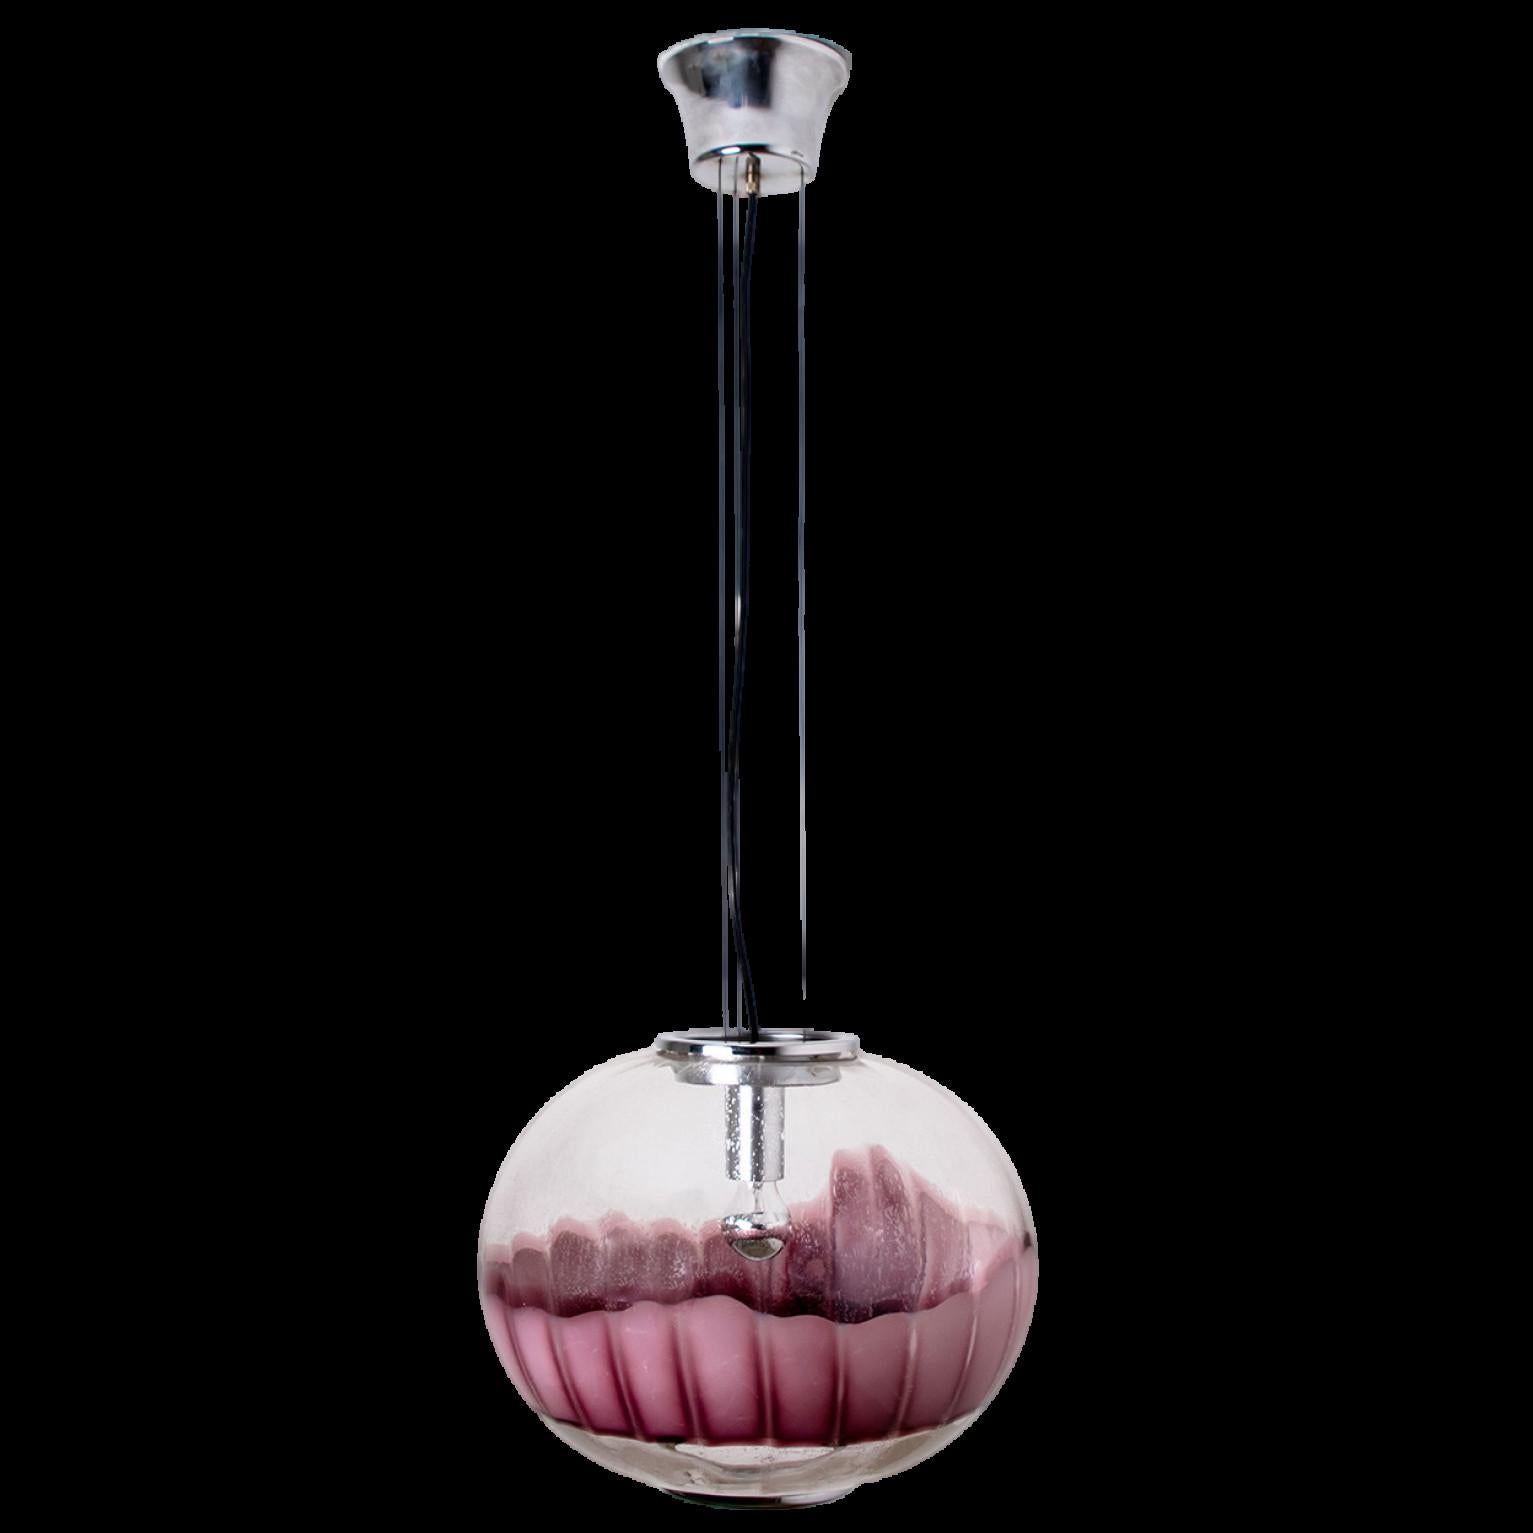 Eine schöne und einzigartige Pendelleuchte von Mazzega, Italien.
Geblasenes klares und auberginefarbenes Murano-Glas sowie ein verchromter Sockel und eine verchromte Oberfläche machen dieses schöne Stück aus.

Maße: H 27.24